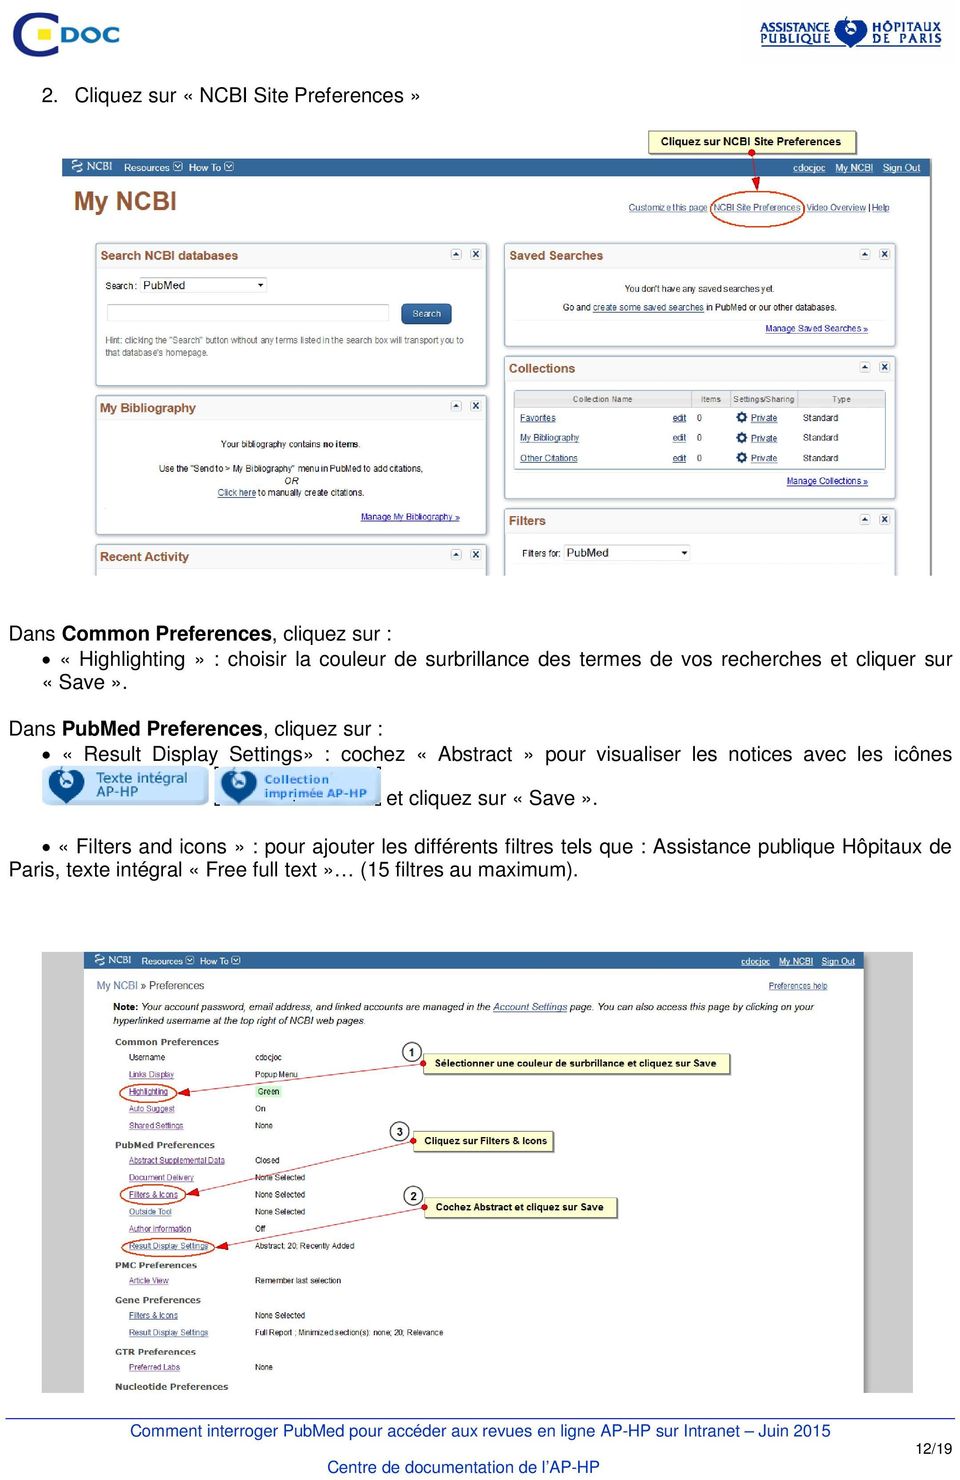 Dans PubMed Preferences, cliquez sur : «Result Display Settings» : cochez «Abstract» pour visualiser les notices avec les